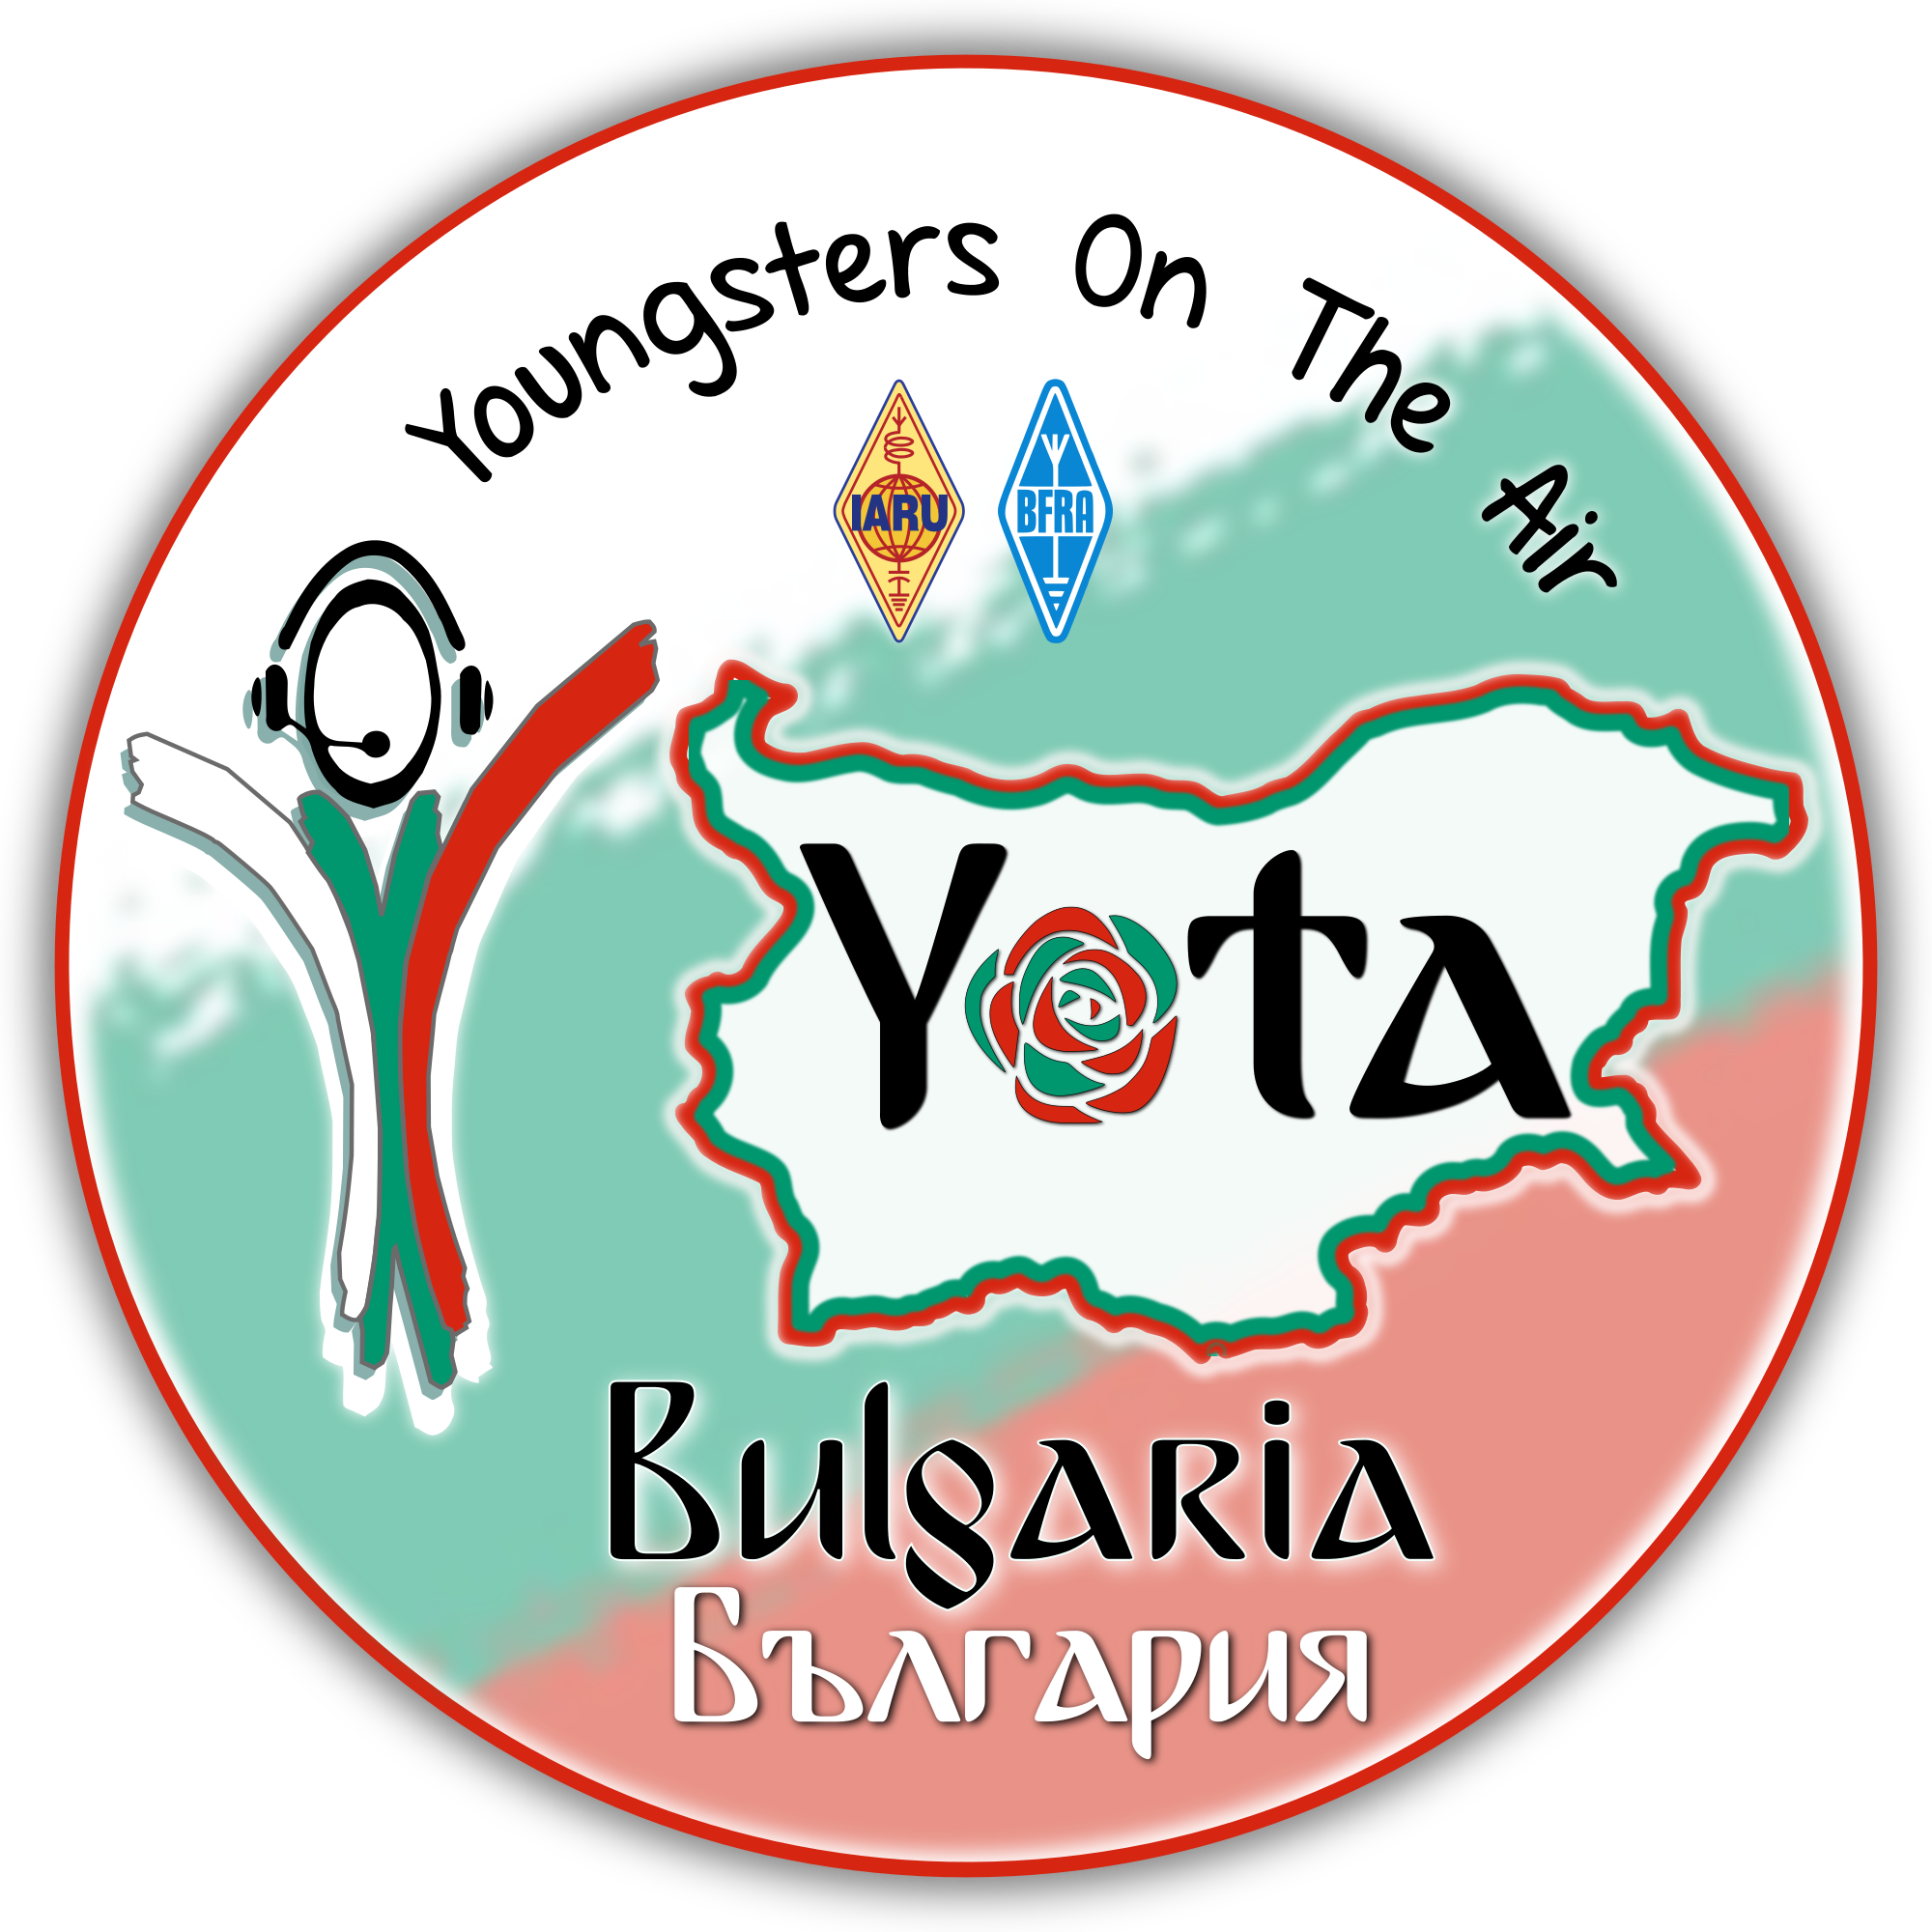 Partecipazione allo YOTA LZ 2019 – Bulgaria